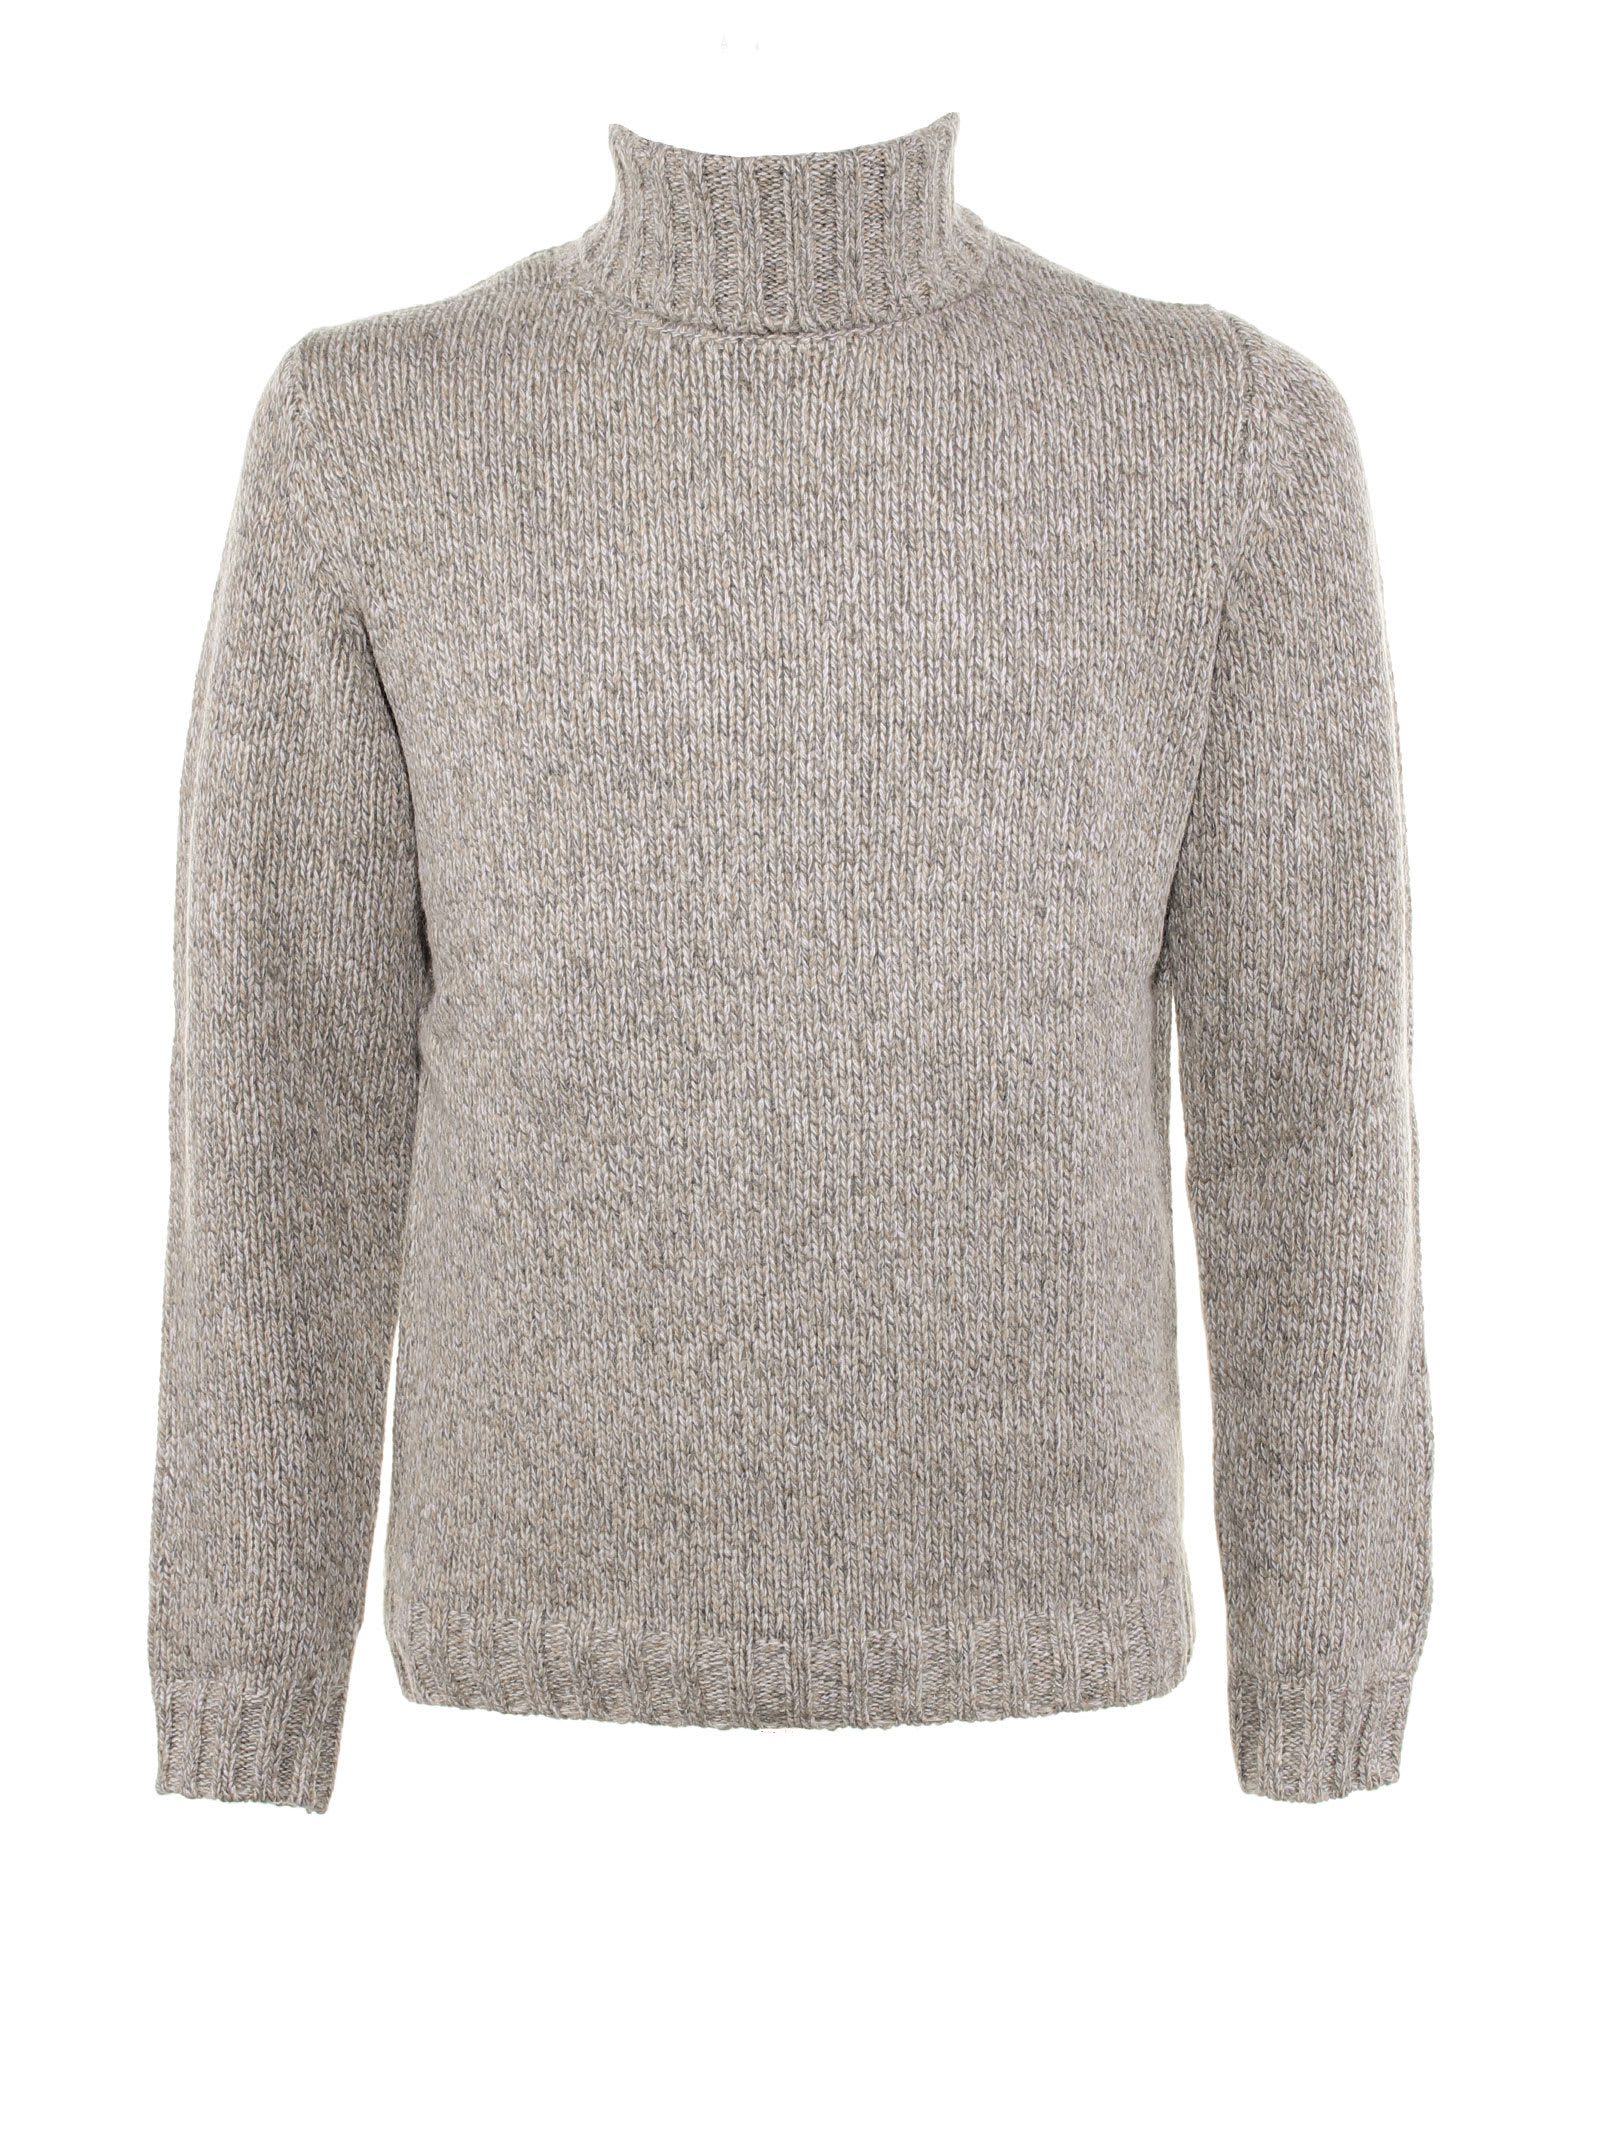 Aspesi Wool Blend Turtleneck Sweater In Cenere